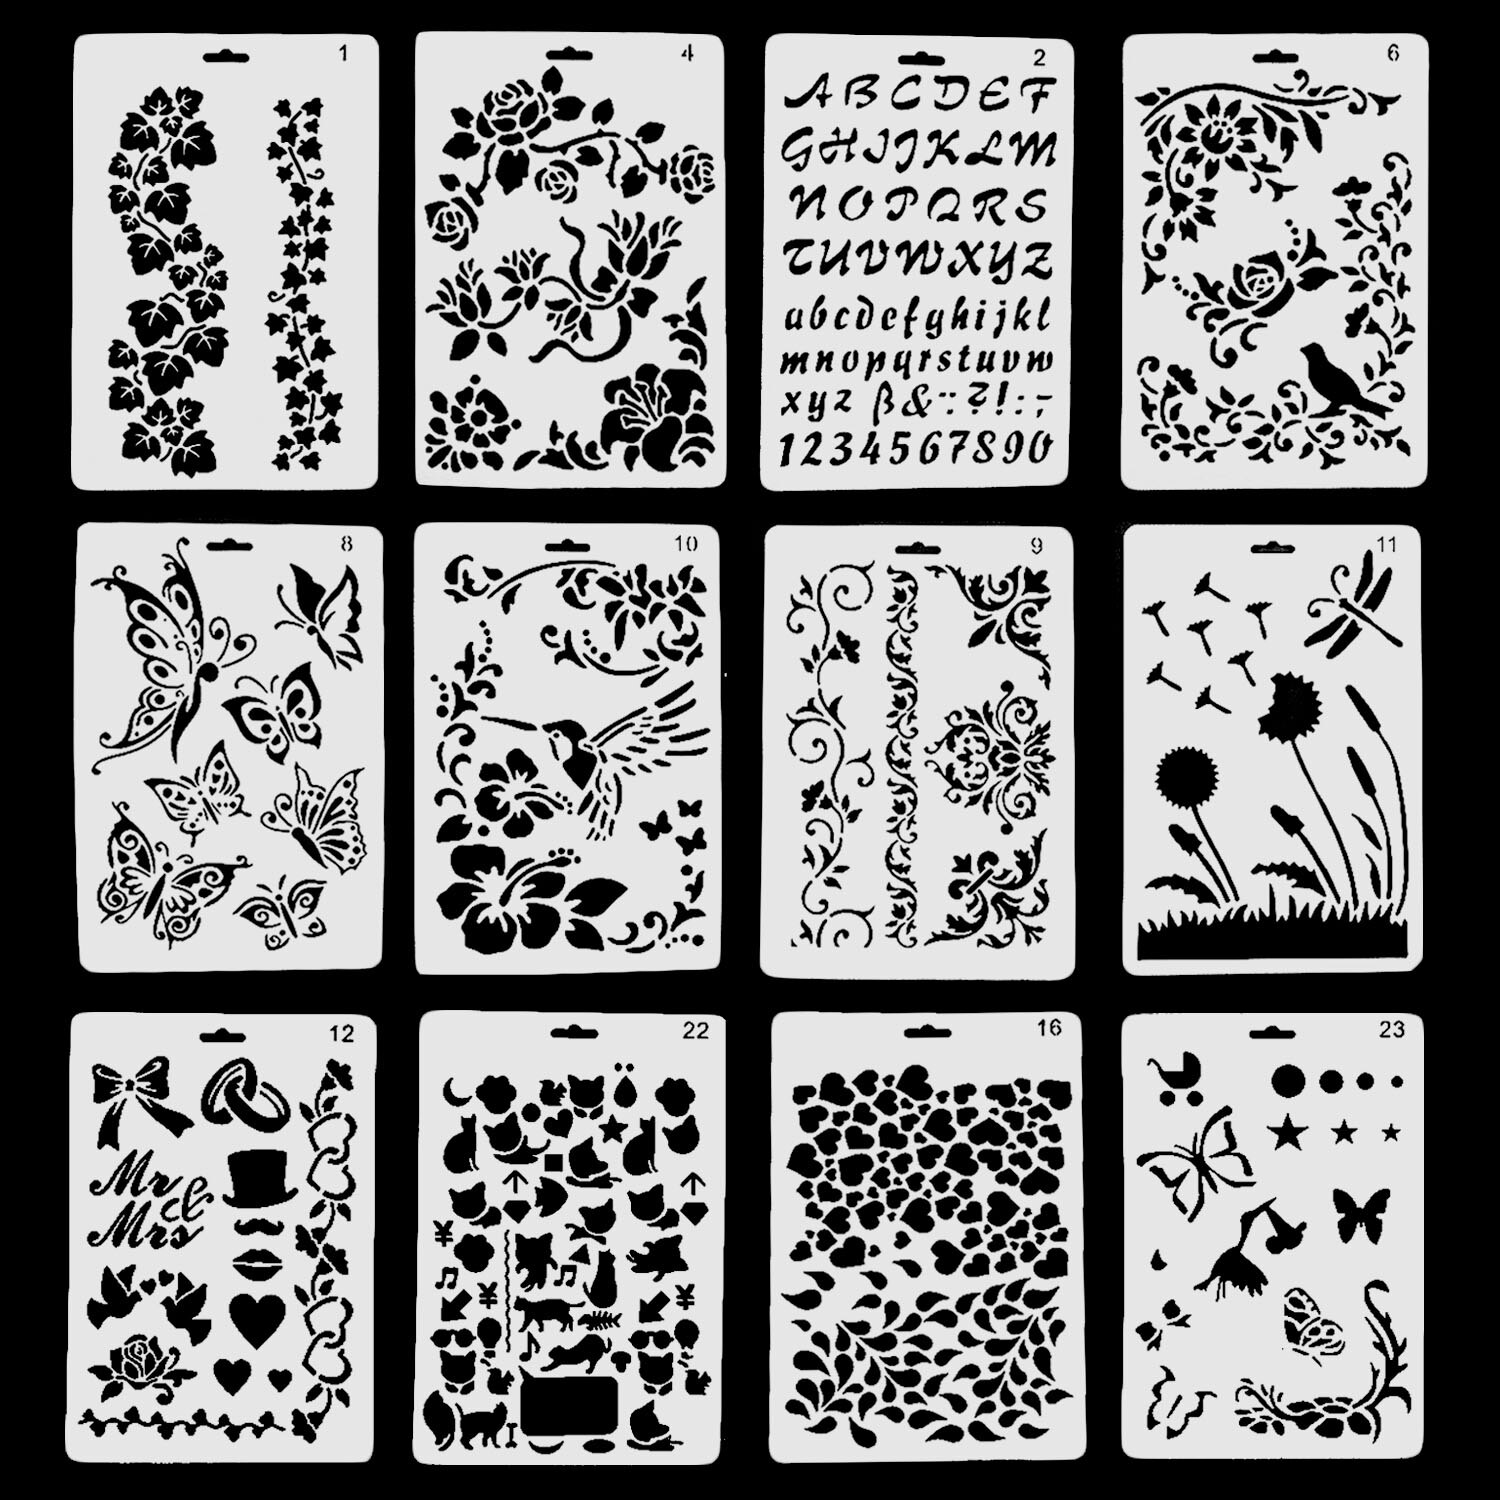 12 STUKS Plastic Hollow Out Vlinder Bloem Tekening Stencils Sjablonen voor Journal Scrapbook Fotoalbum Kaarten